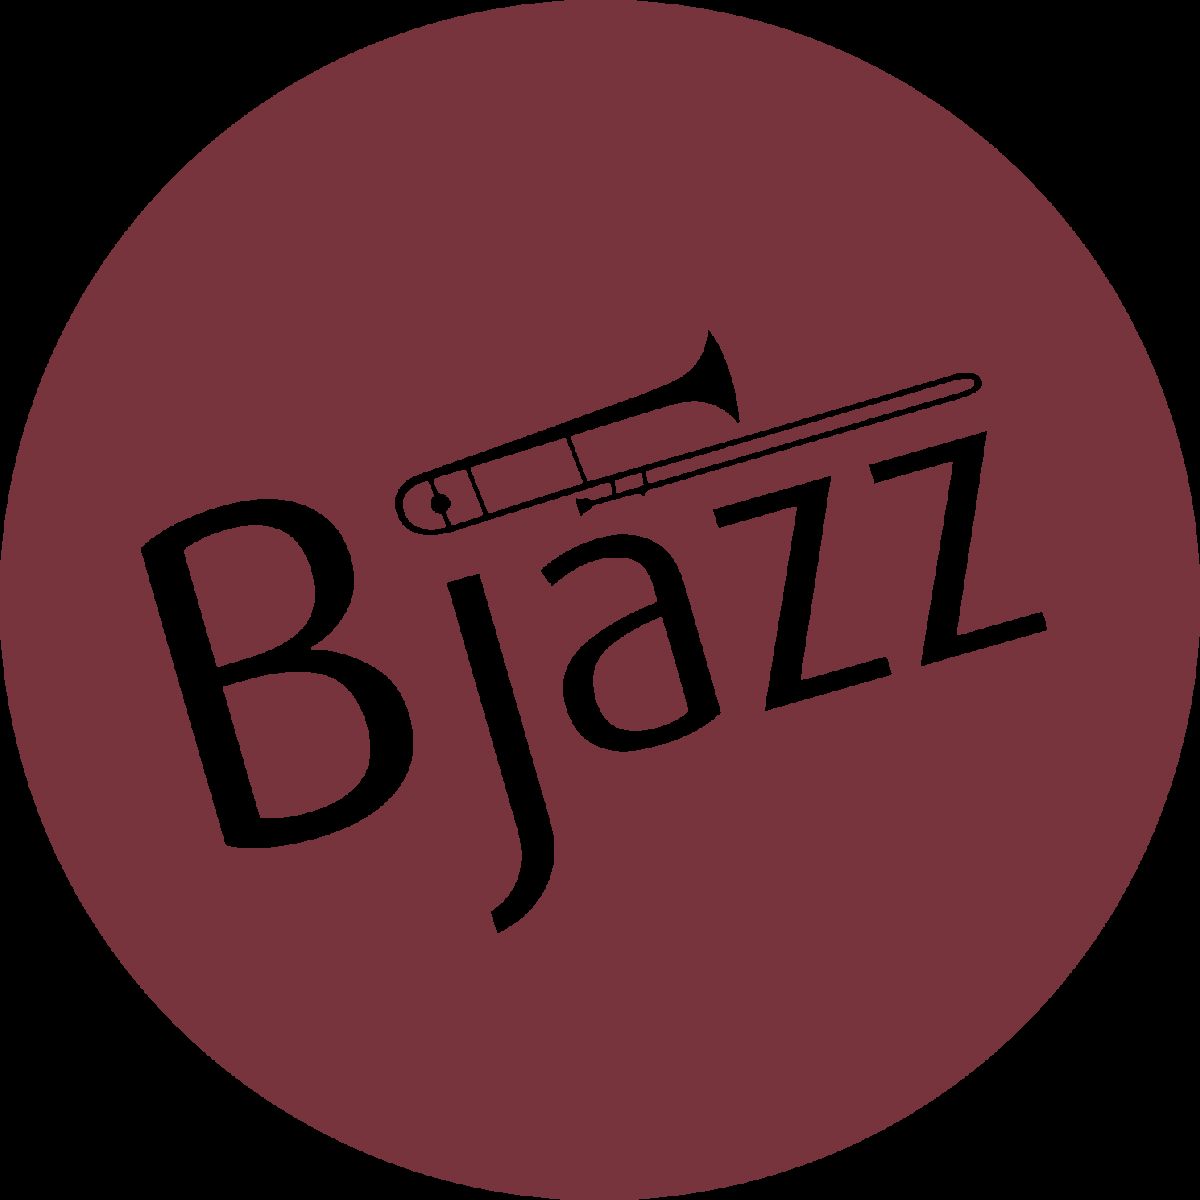 BJAZZ - Óbidos - Entretenimento com Banda Musical